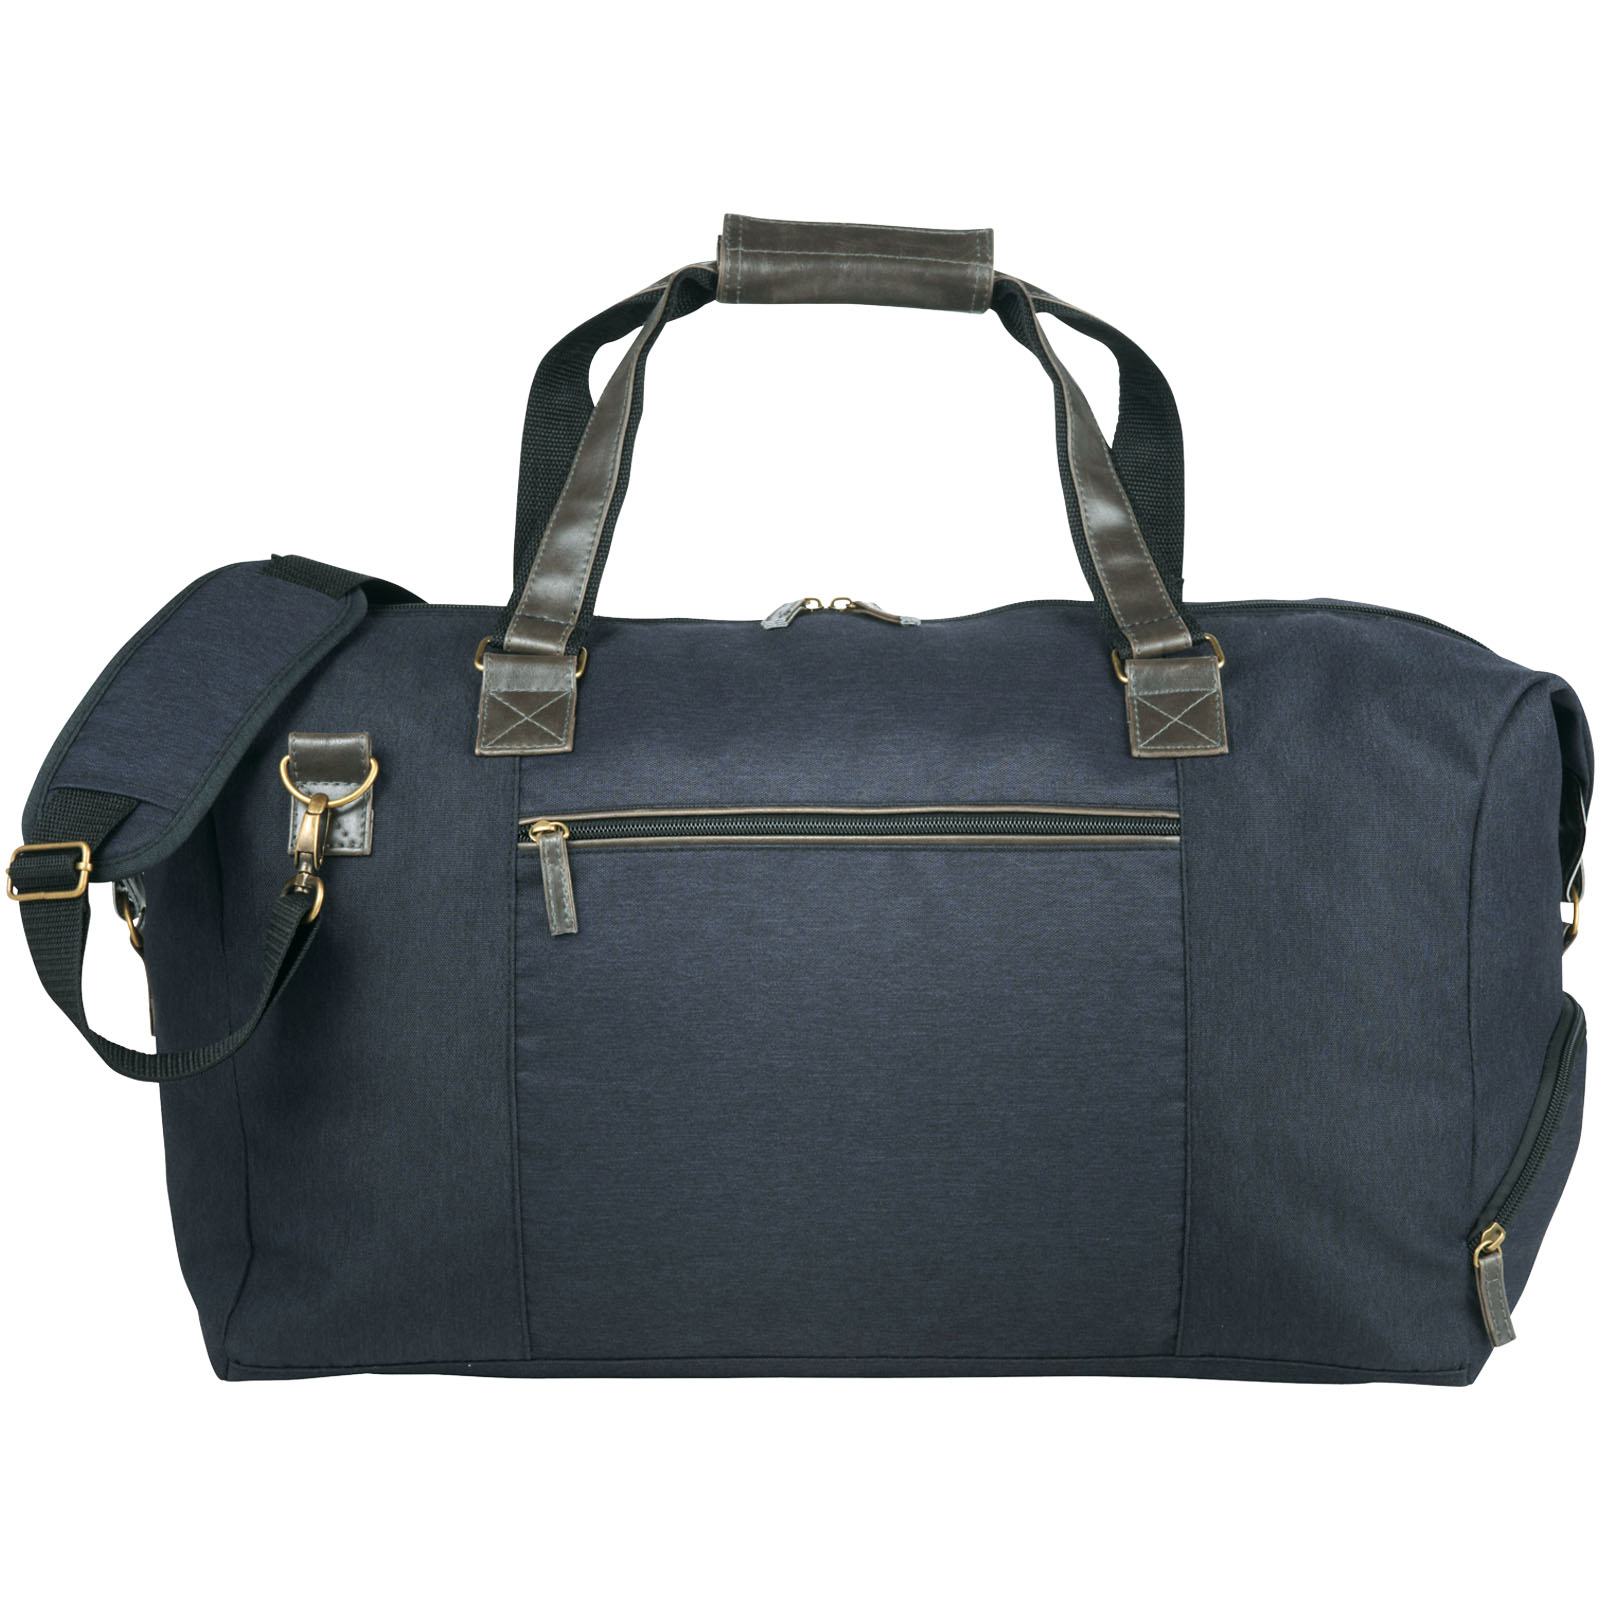 Advertising Travel bags - Capitol duffel bag 35L - 1